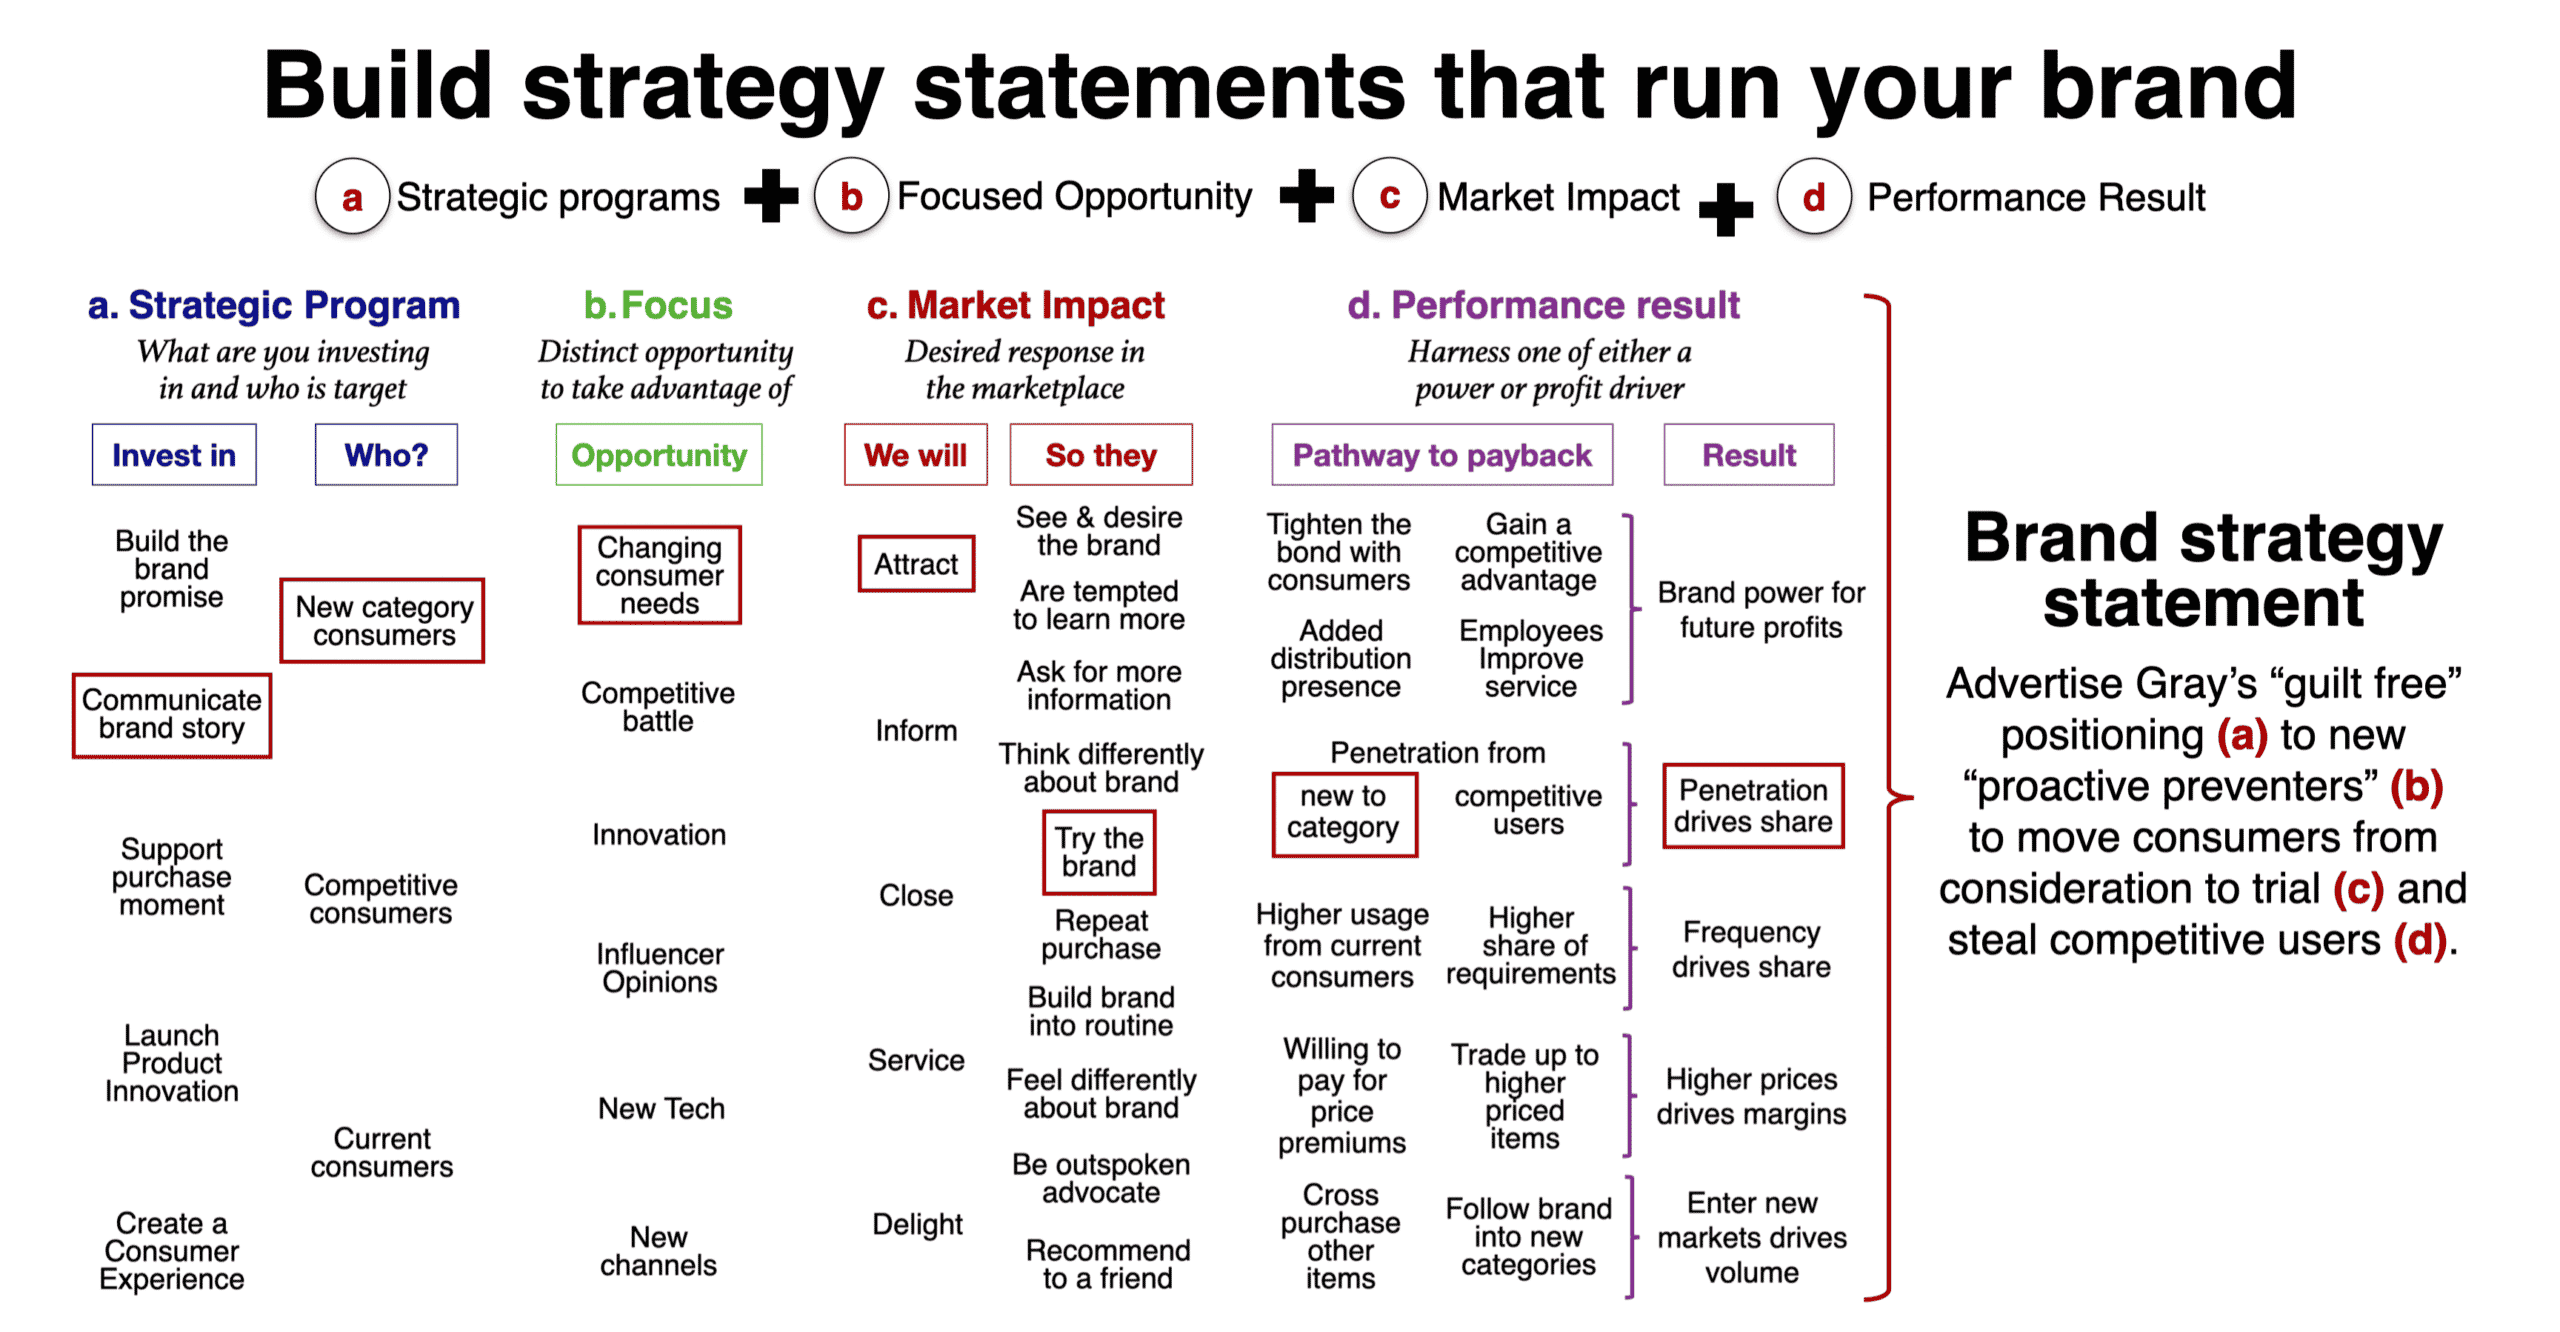 Brand Strategy statement details